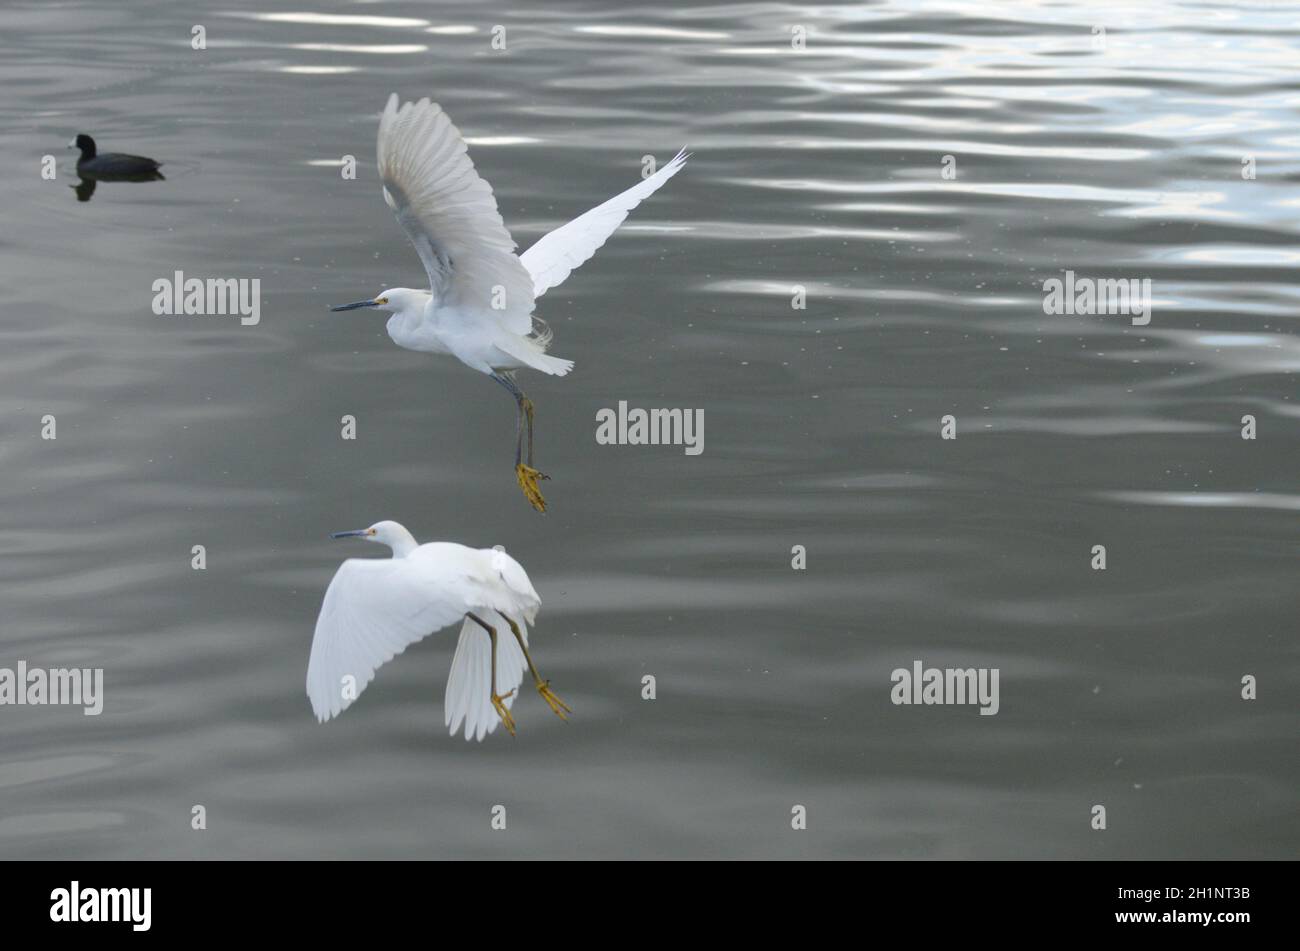 2 egrette decolgono con grazia in volo, comunicando la vicinanza, la compassione di queste bellezze esotiche di uccelli selvatici, espressivo e ispiratore. Foto Stock